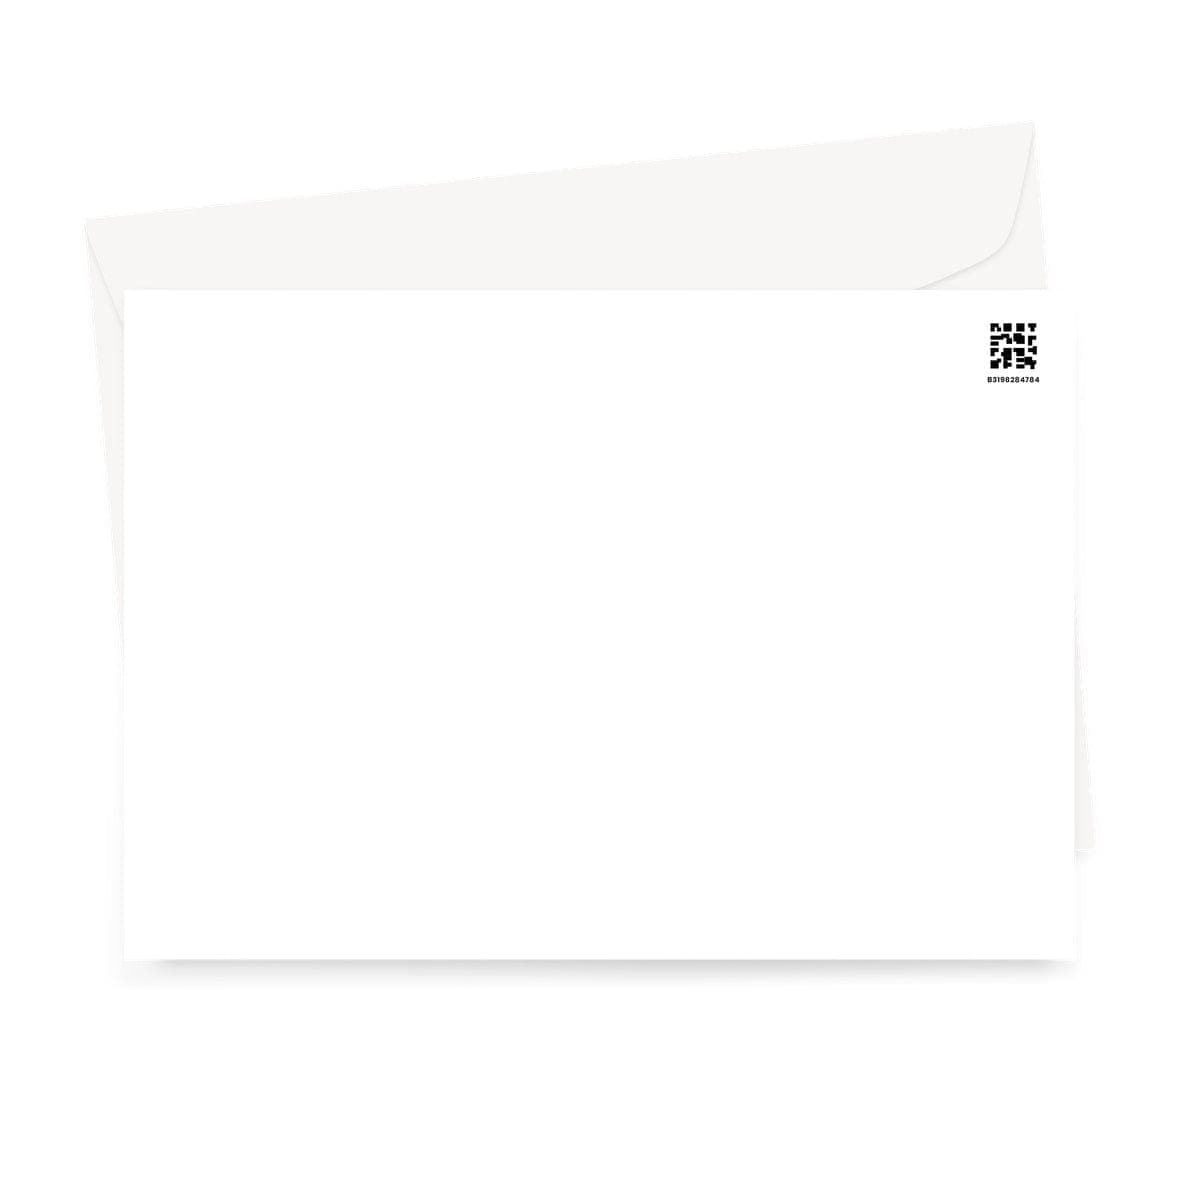 Kate Bush Greeting Card